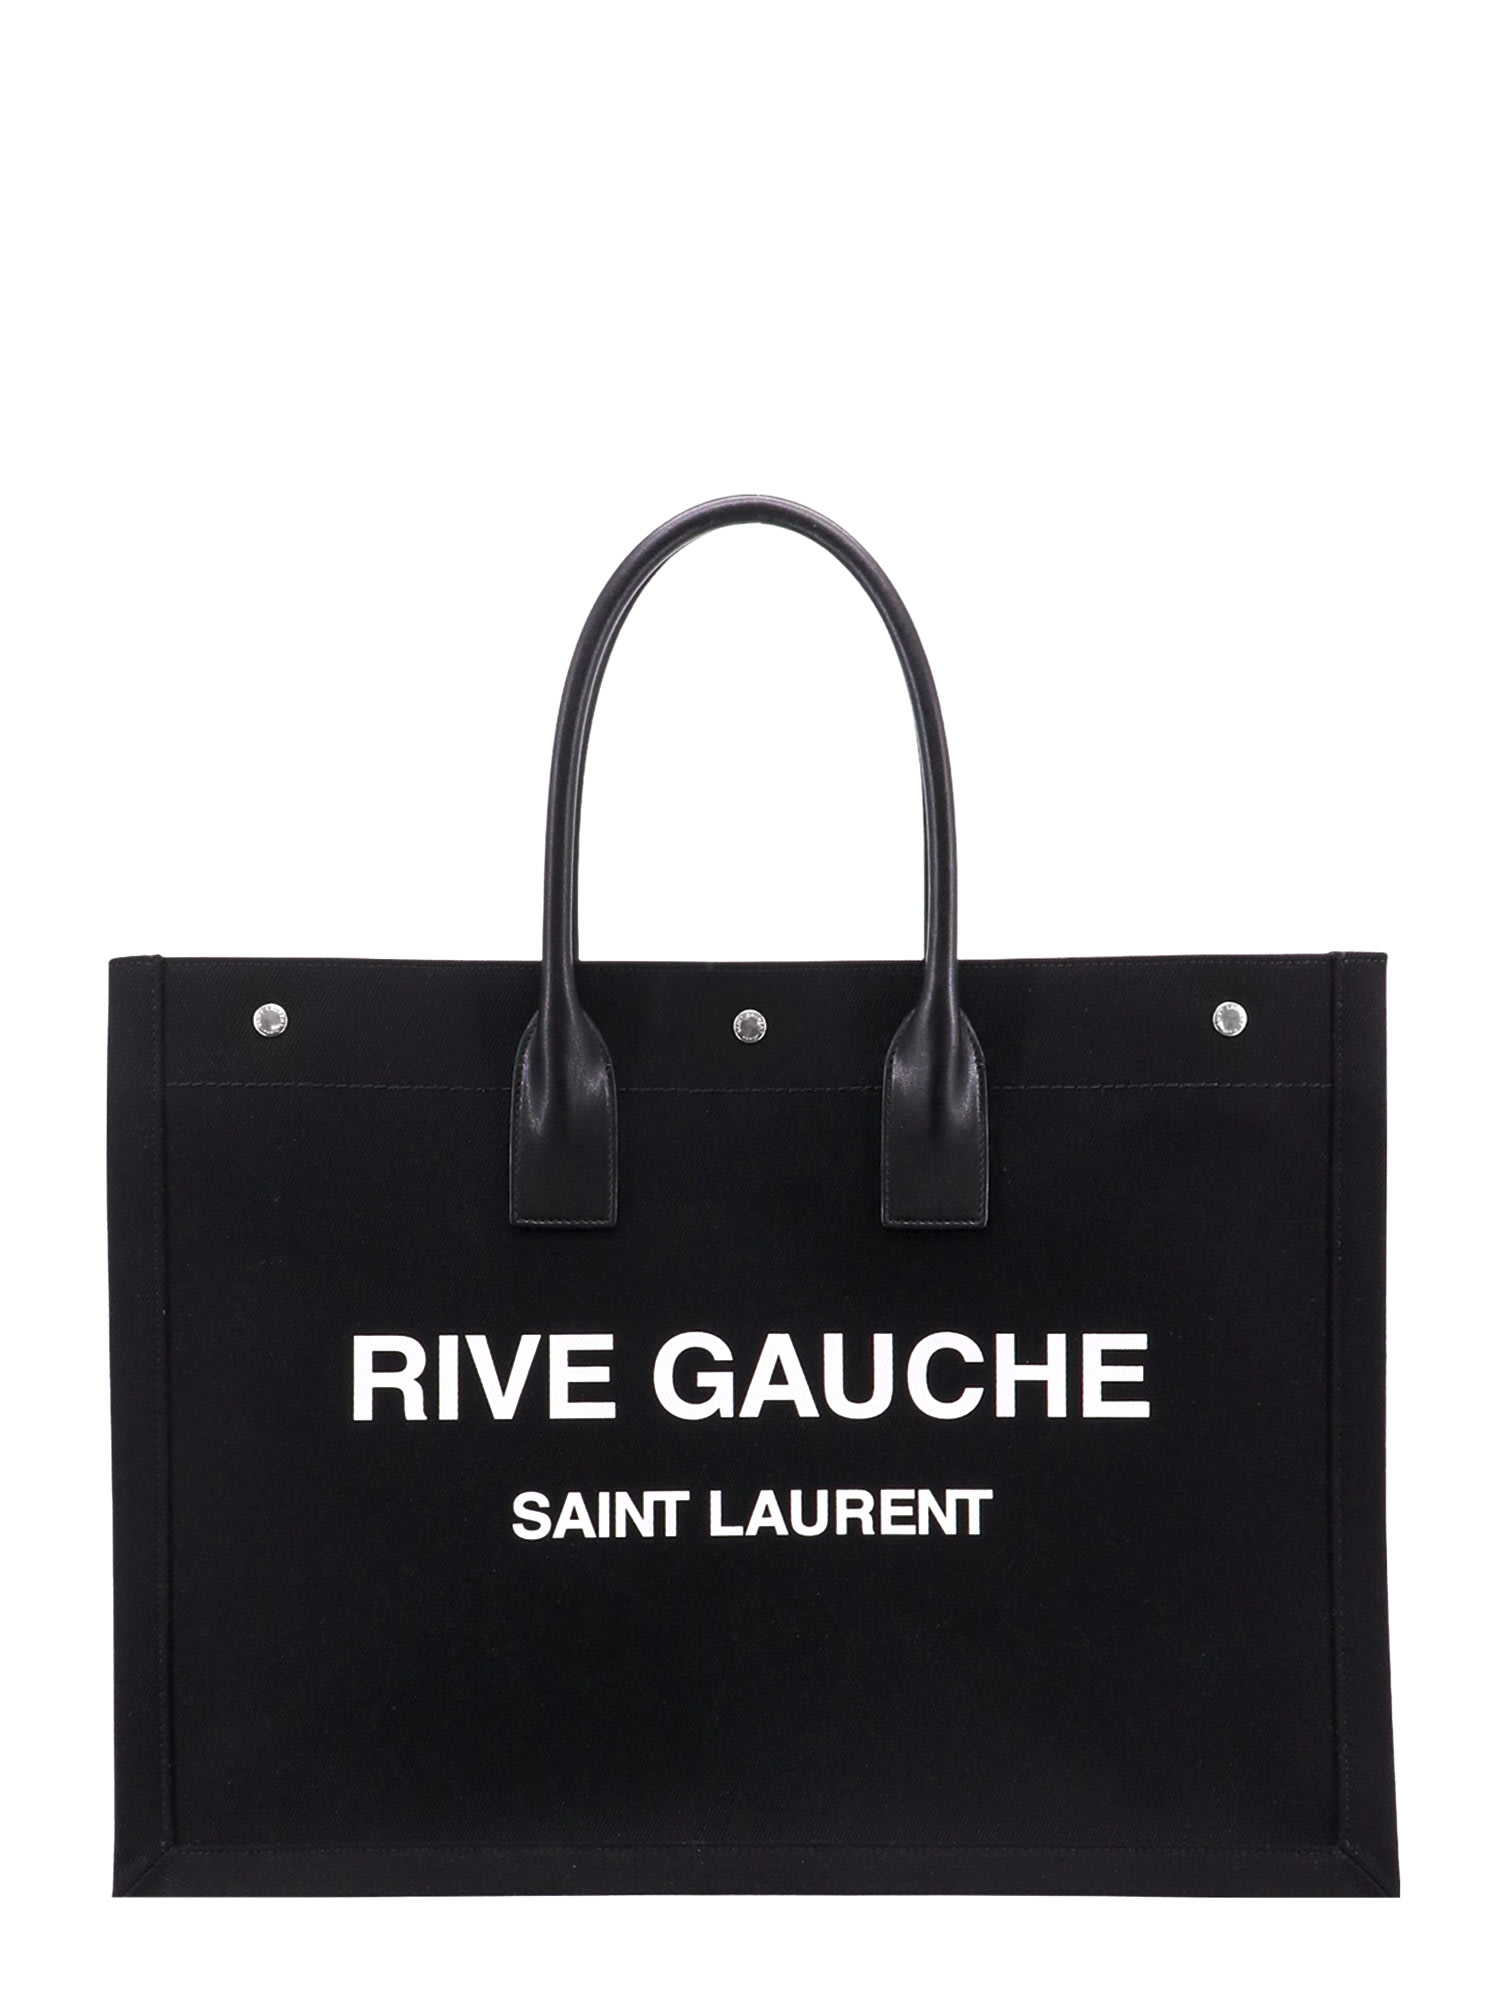 SAINT LAURENT RIVE GAUCHE LARGE SHOPPING BAG